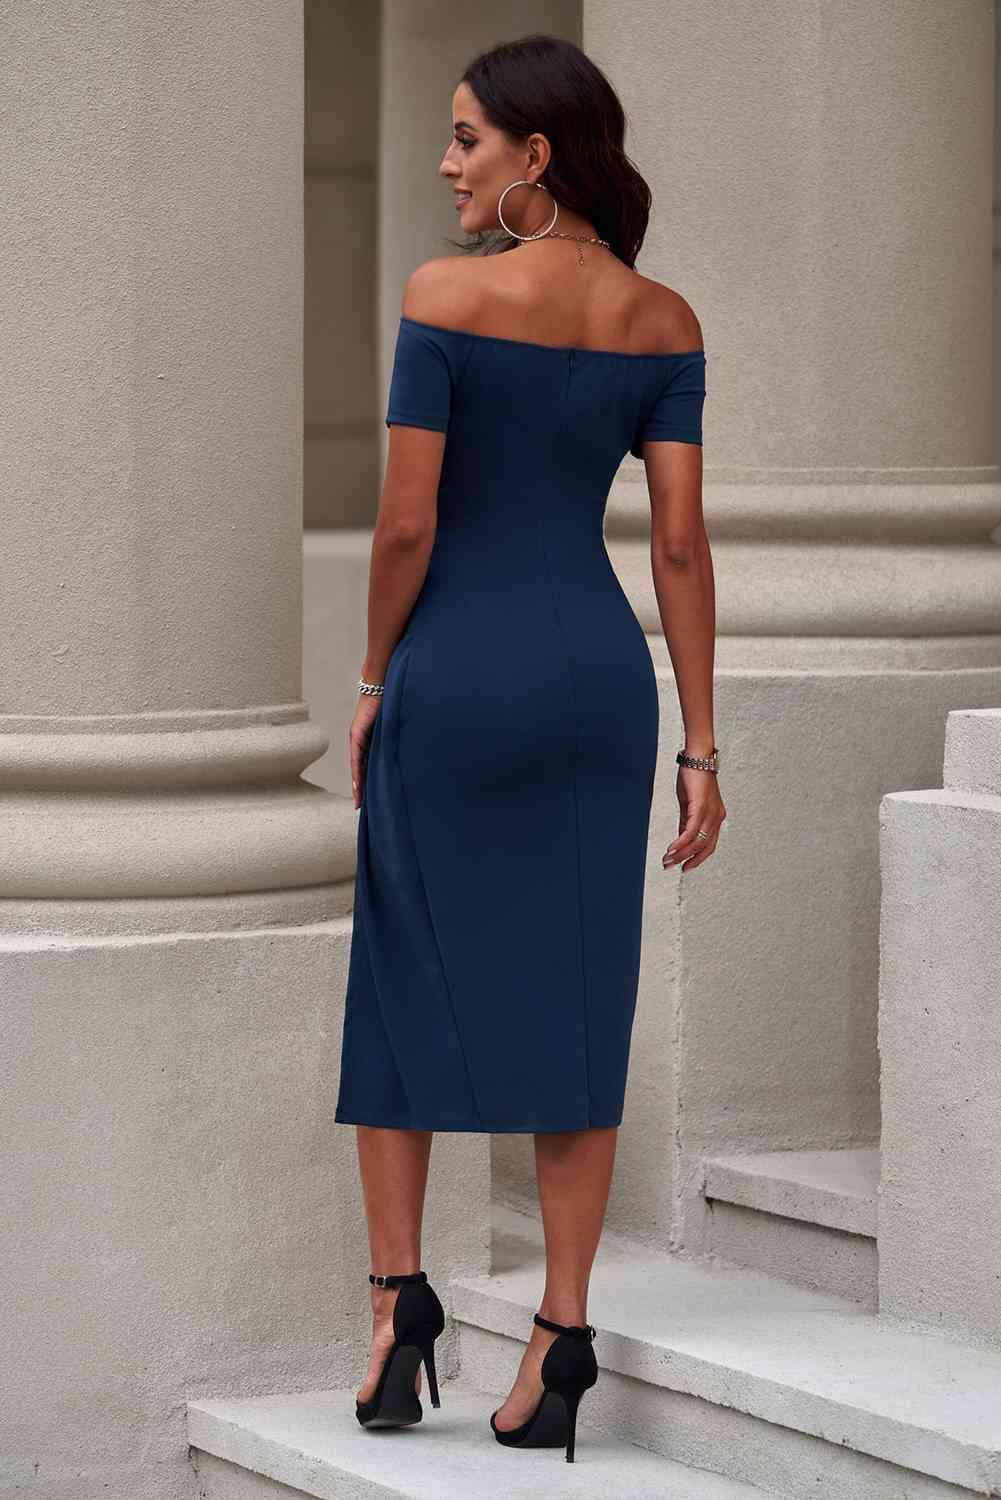 Off-Shoulder Short Sleeve Split Dress - Lucianne Boutique